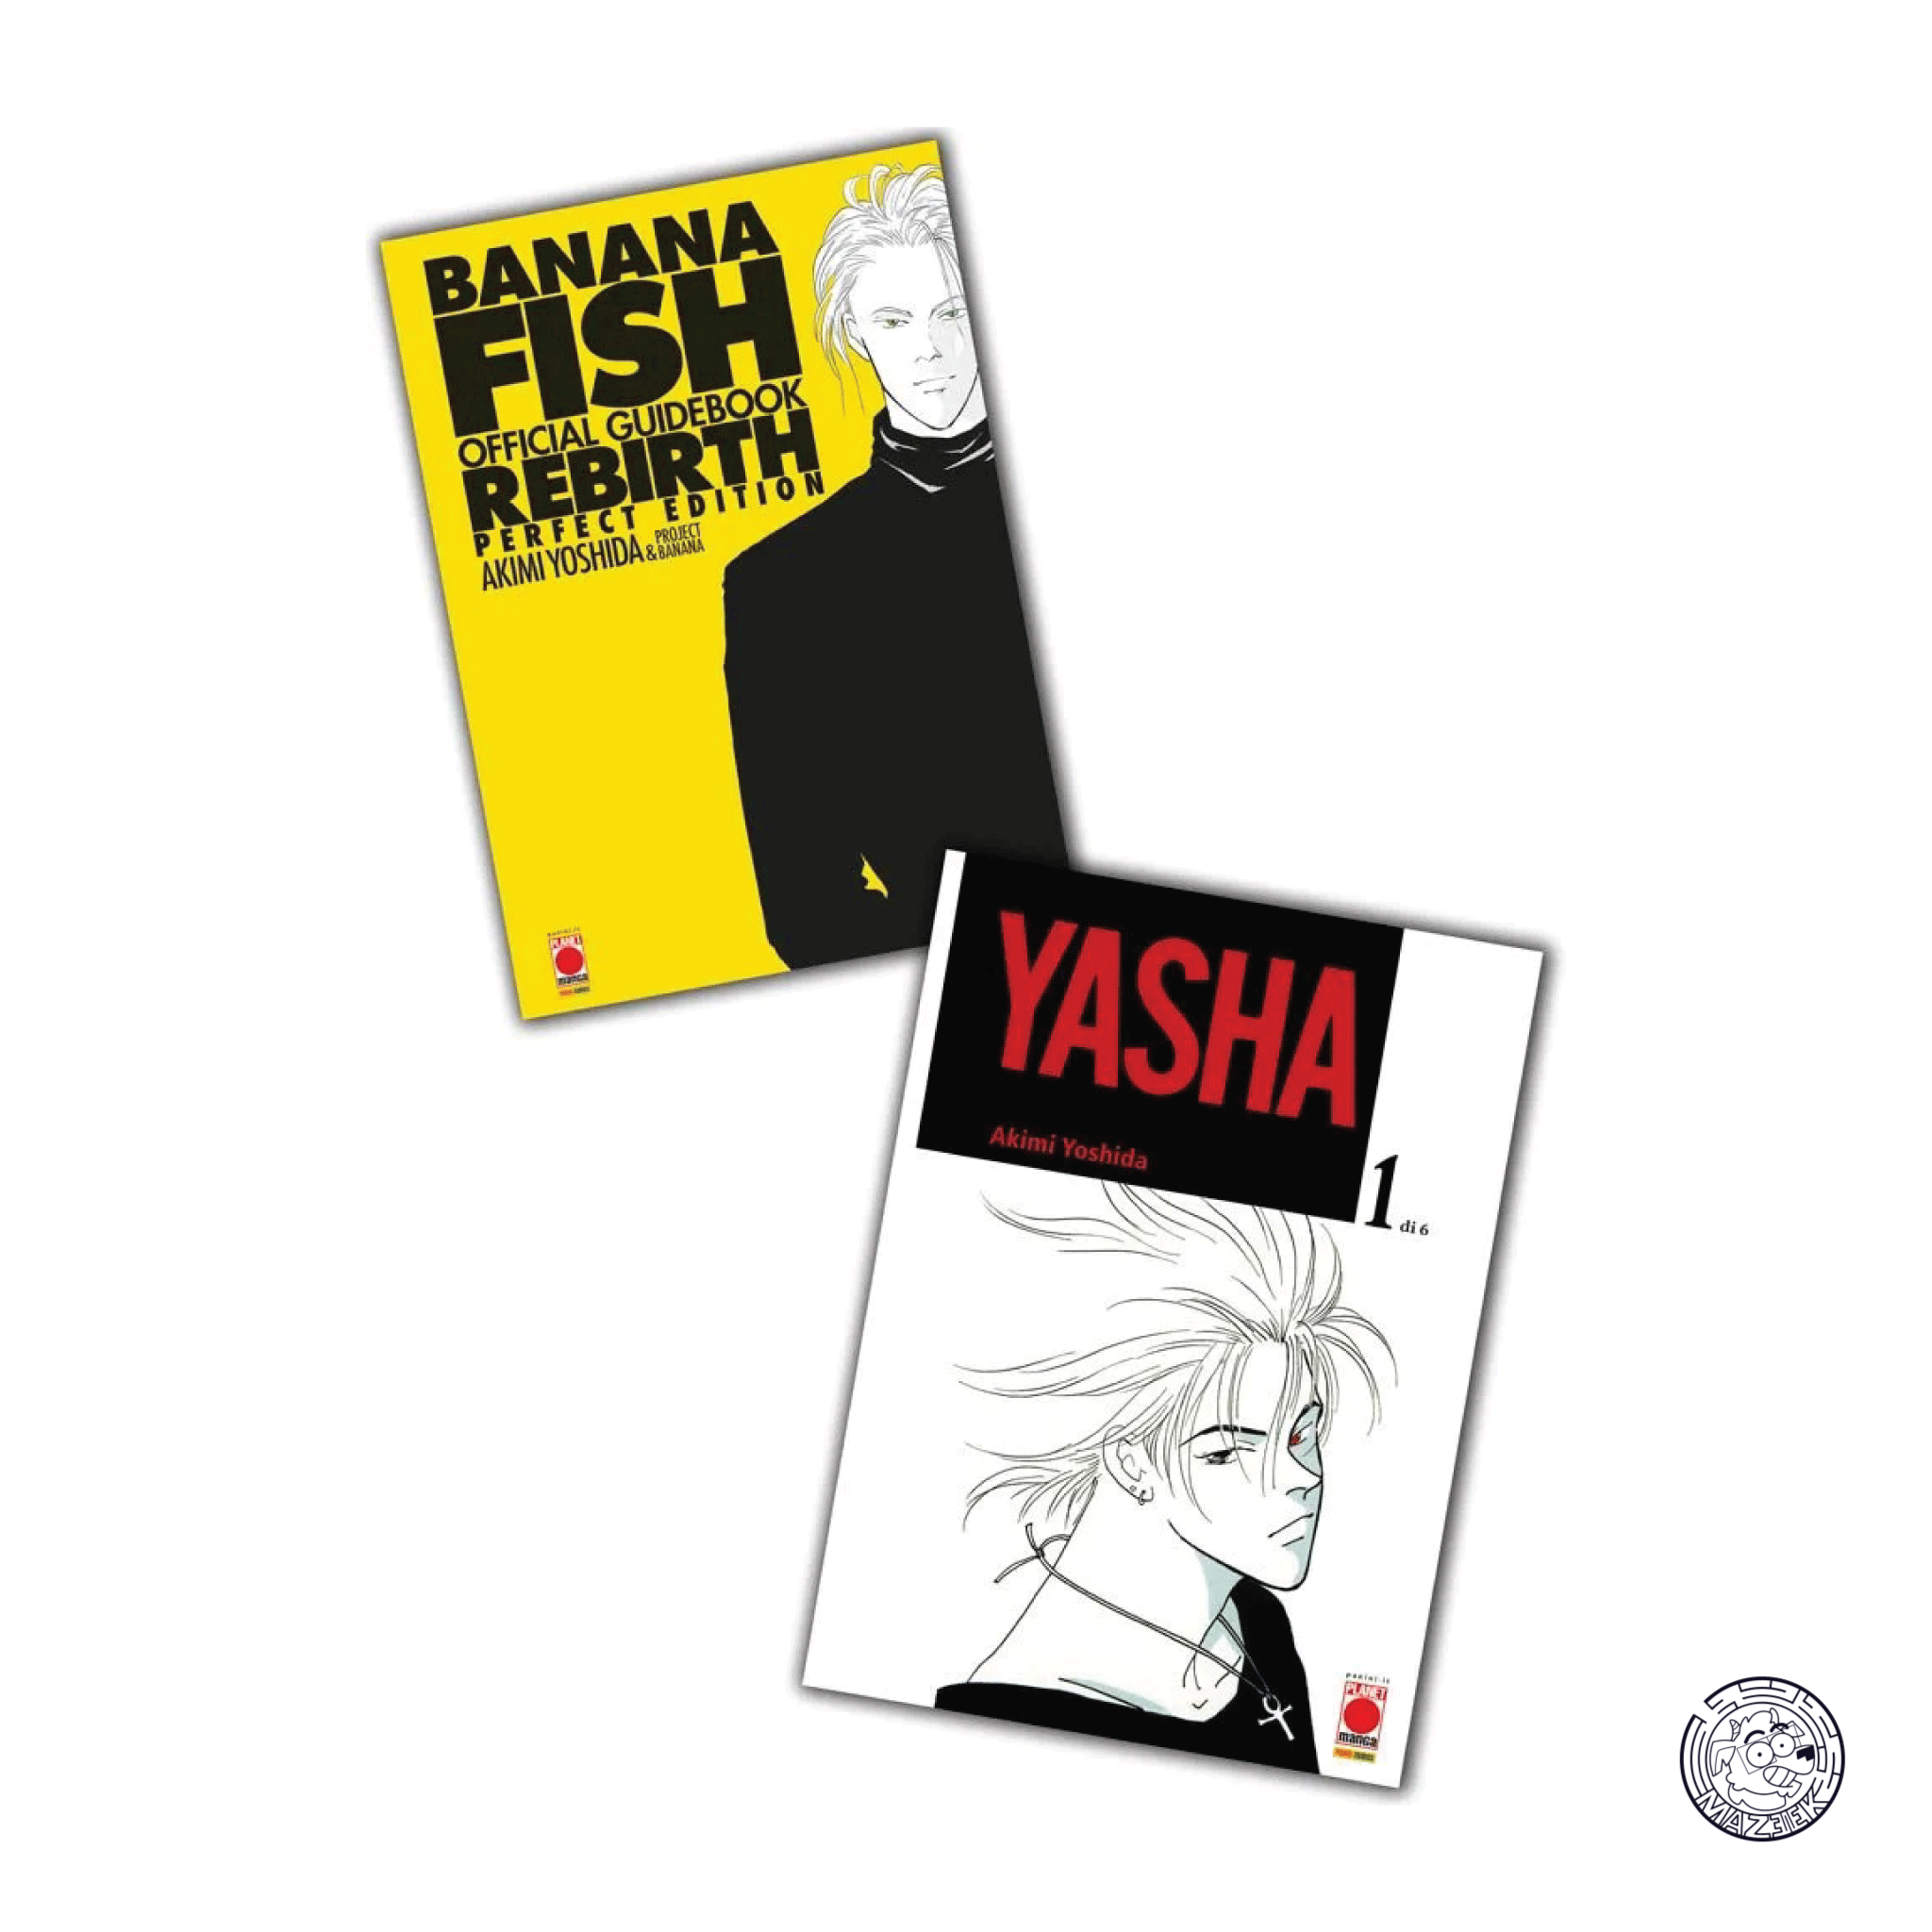 Yasha 01 + Banana Fish, Official Guidebook Rebirth Perfect Edition - Bundle 